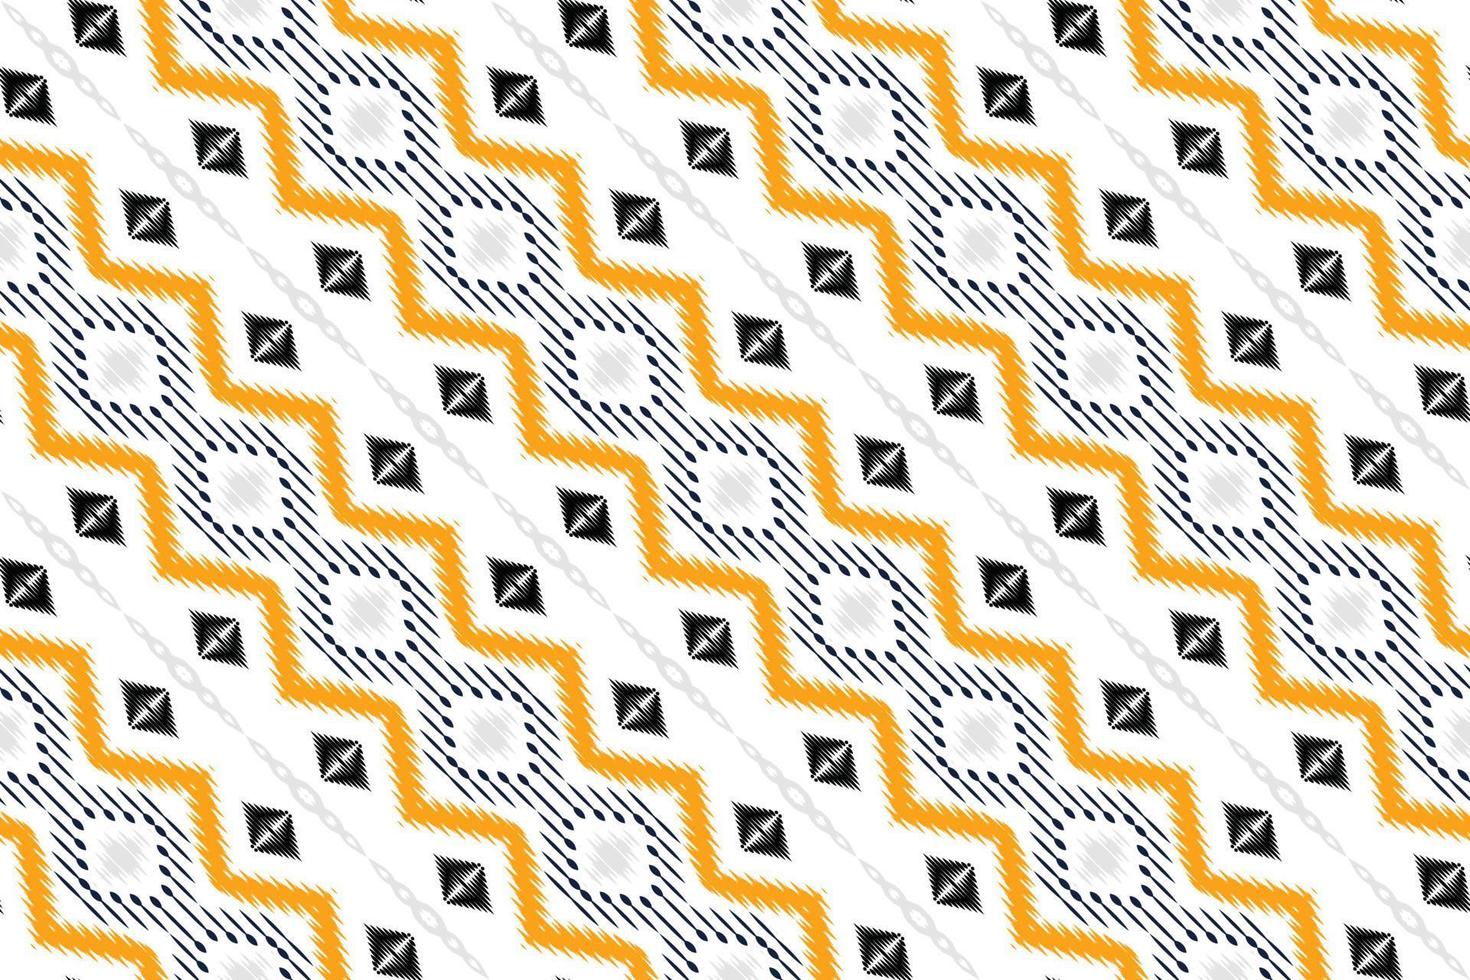 batik textil ikat rayas de patrones sin fisuras diseño vectorial digital para imprimir saree kurti borneo borde de tela símbolos de pincel muestras de algodón vector